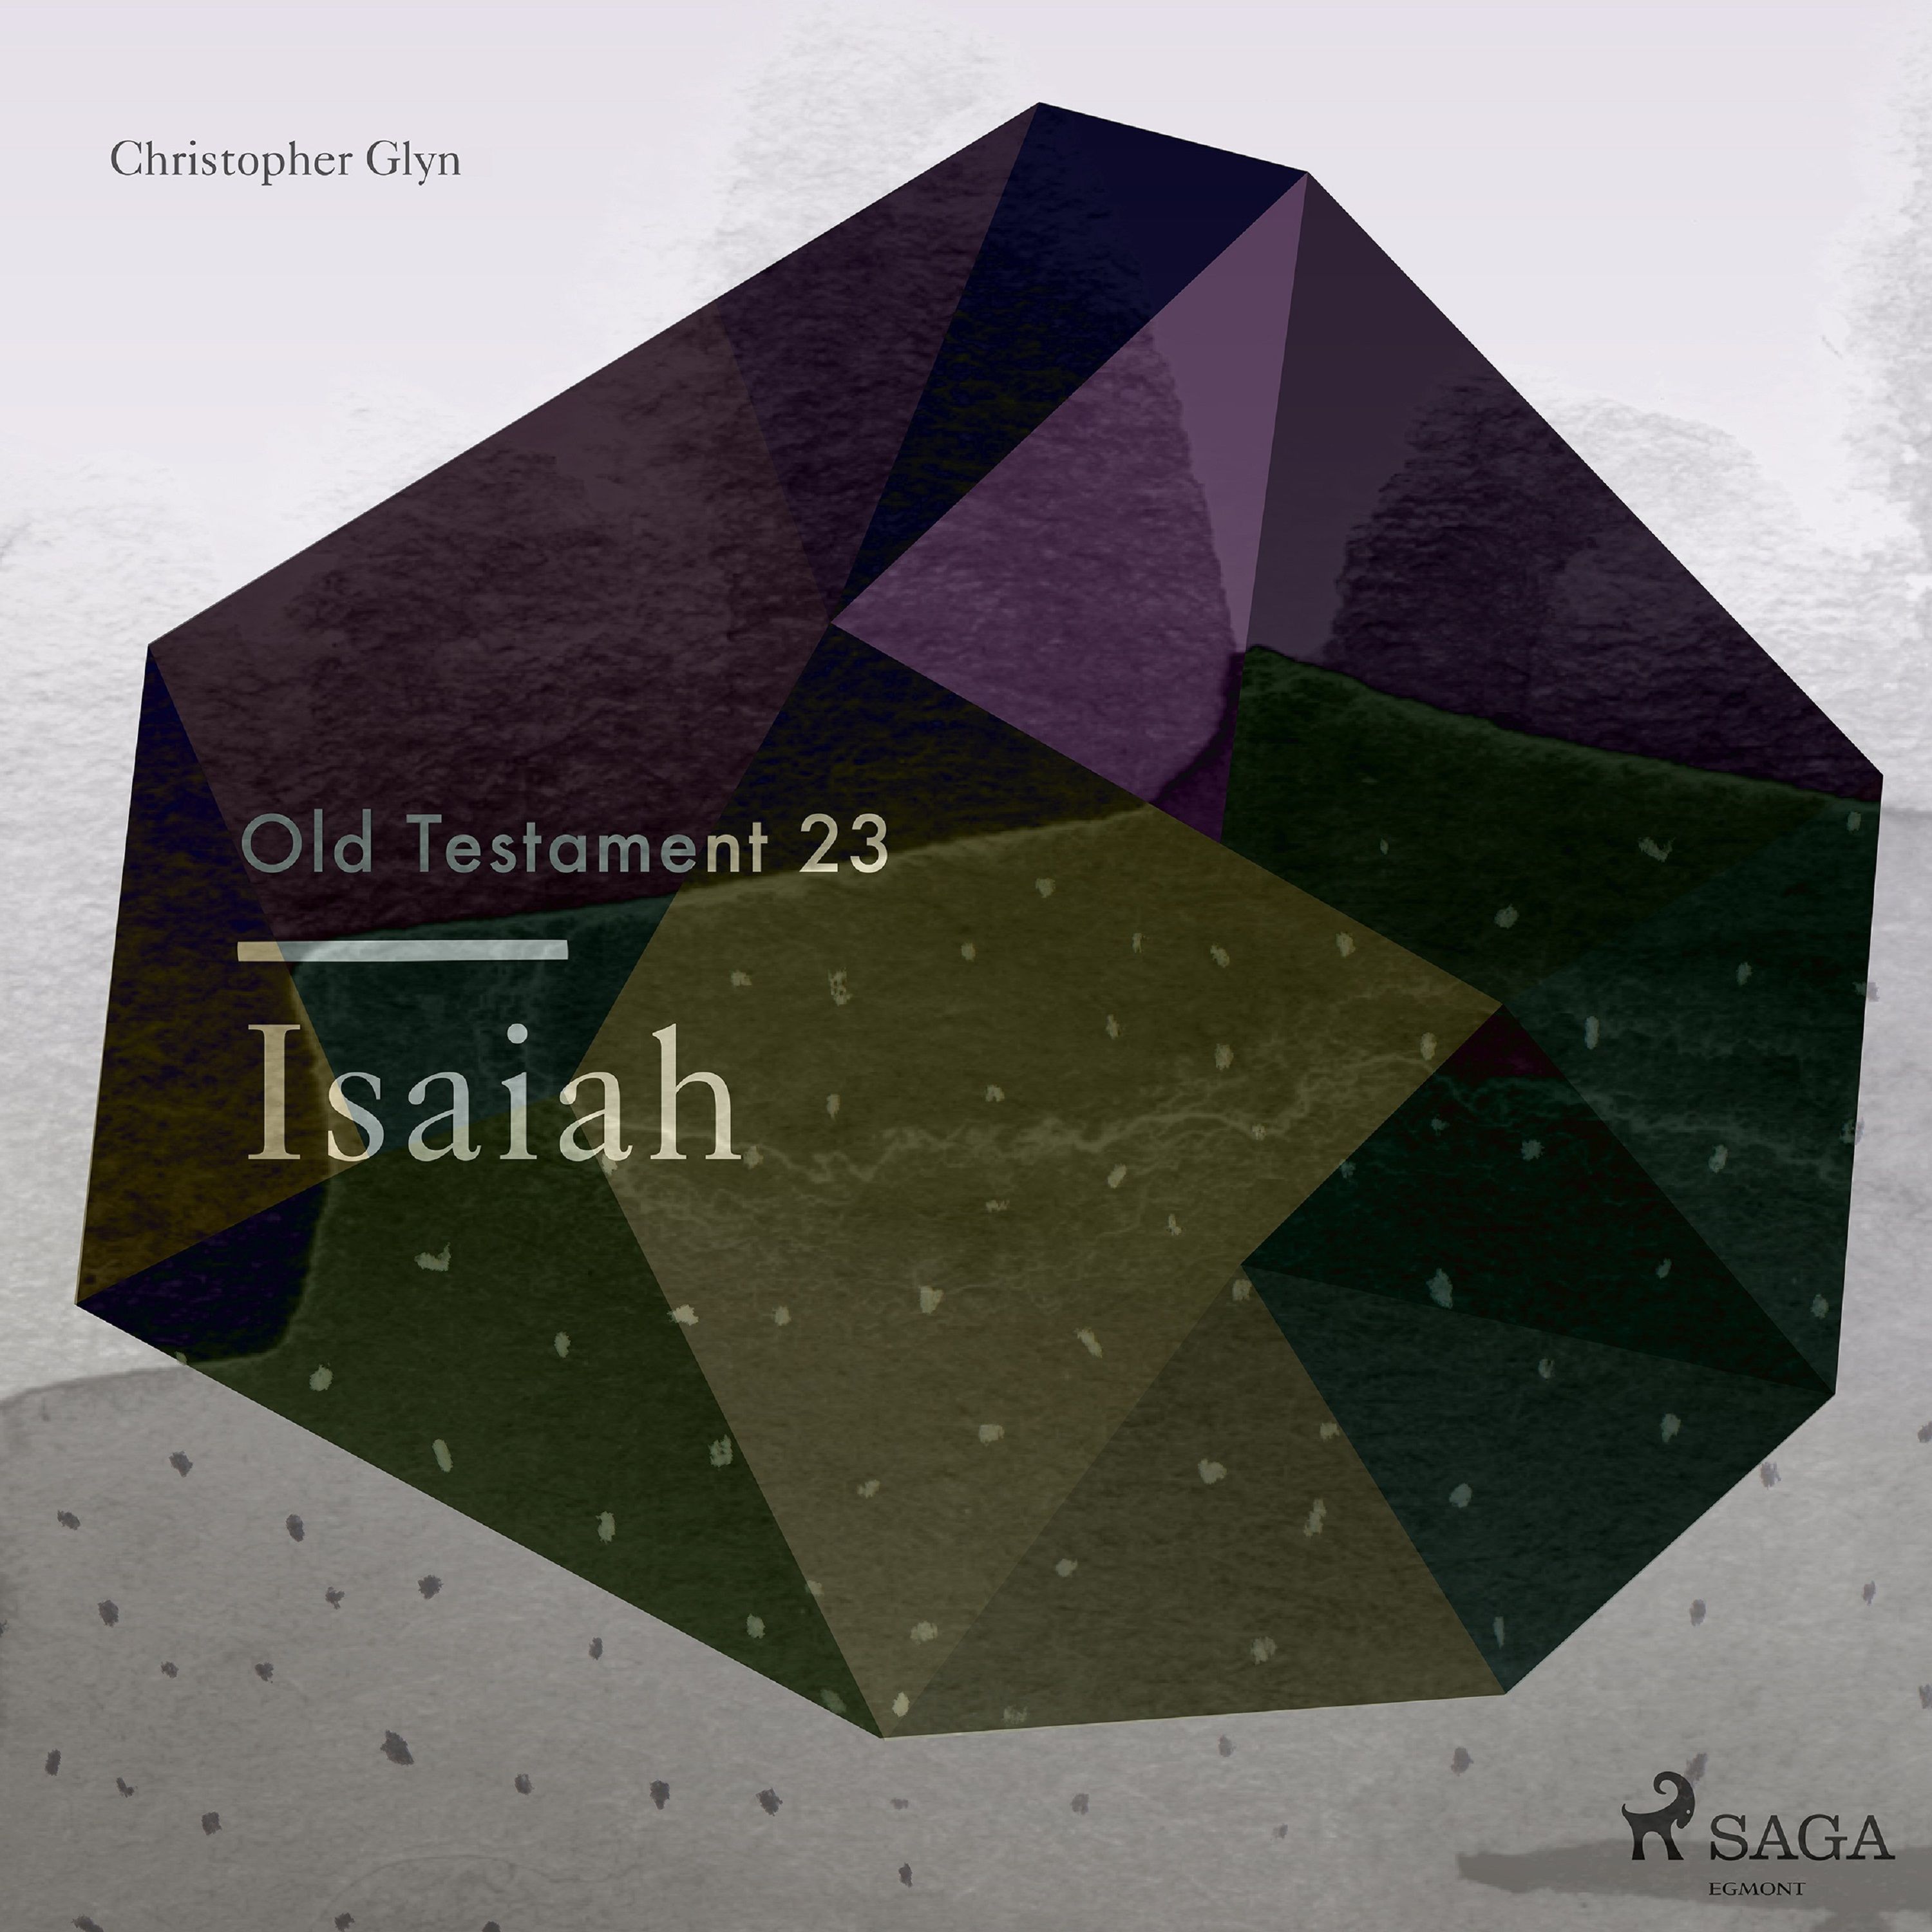 The Old Testament 23 - Isaiah, lydbog af Christopher Glyn